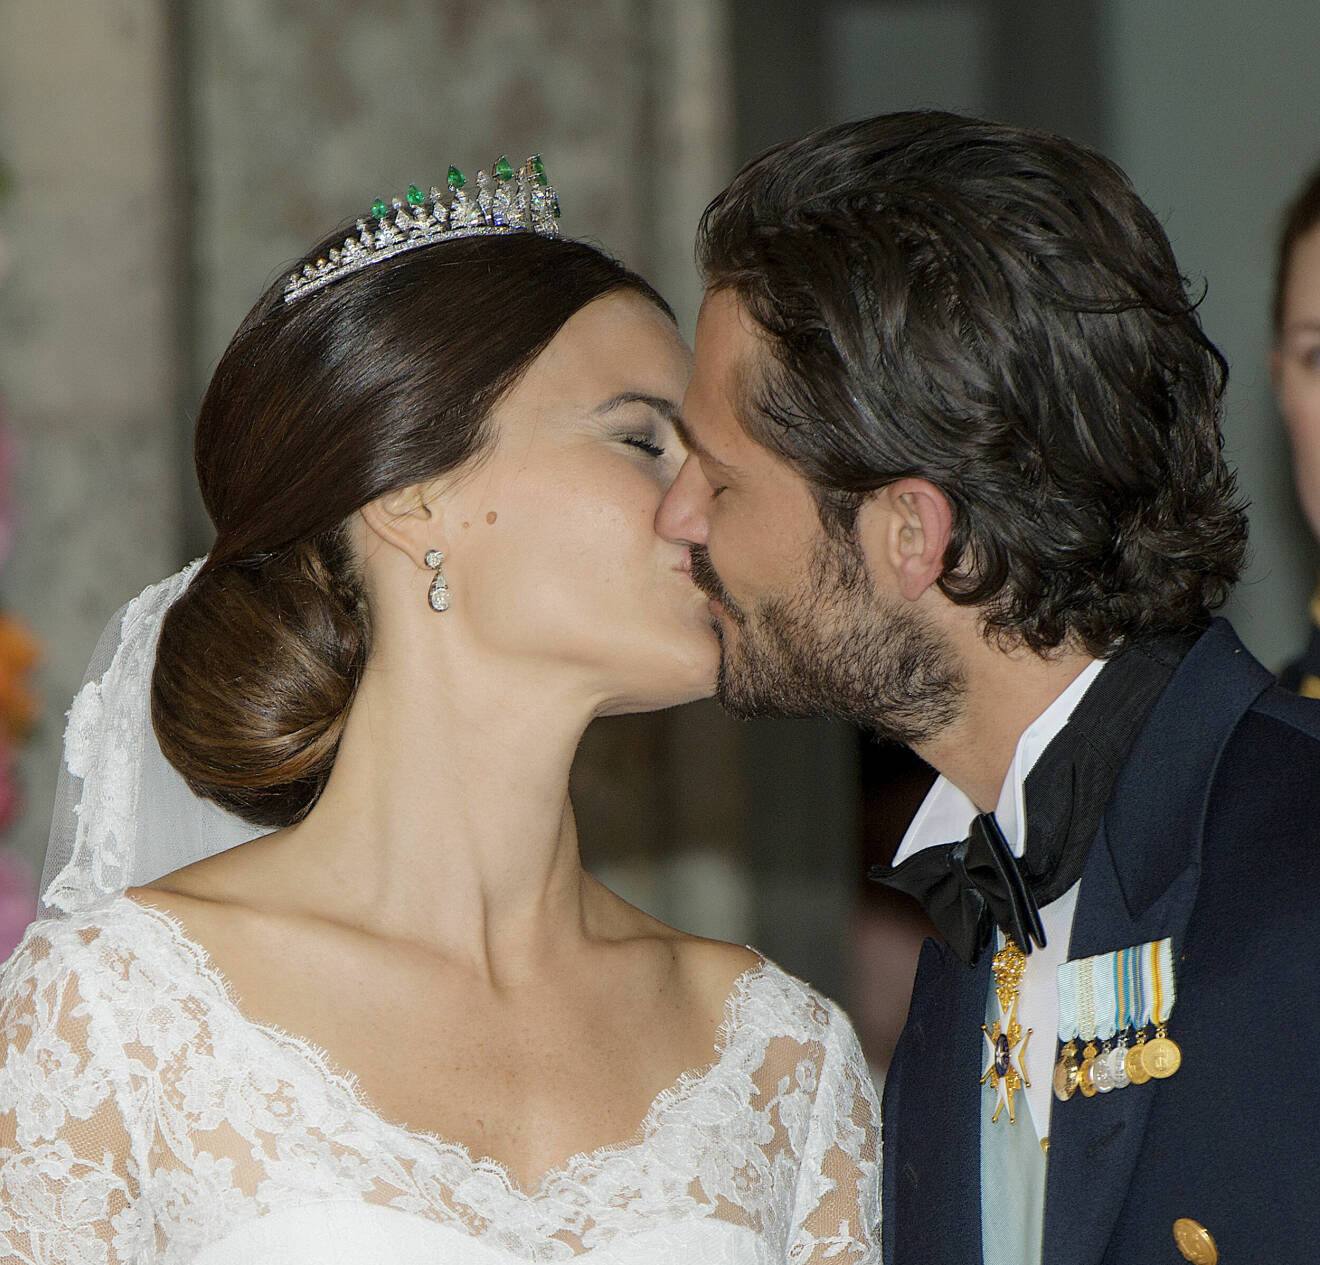 Prinsessan Sofia och prins Carl Philip kysser varandra på sitt bröllop, 2015